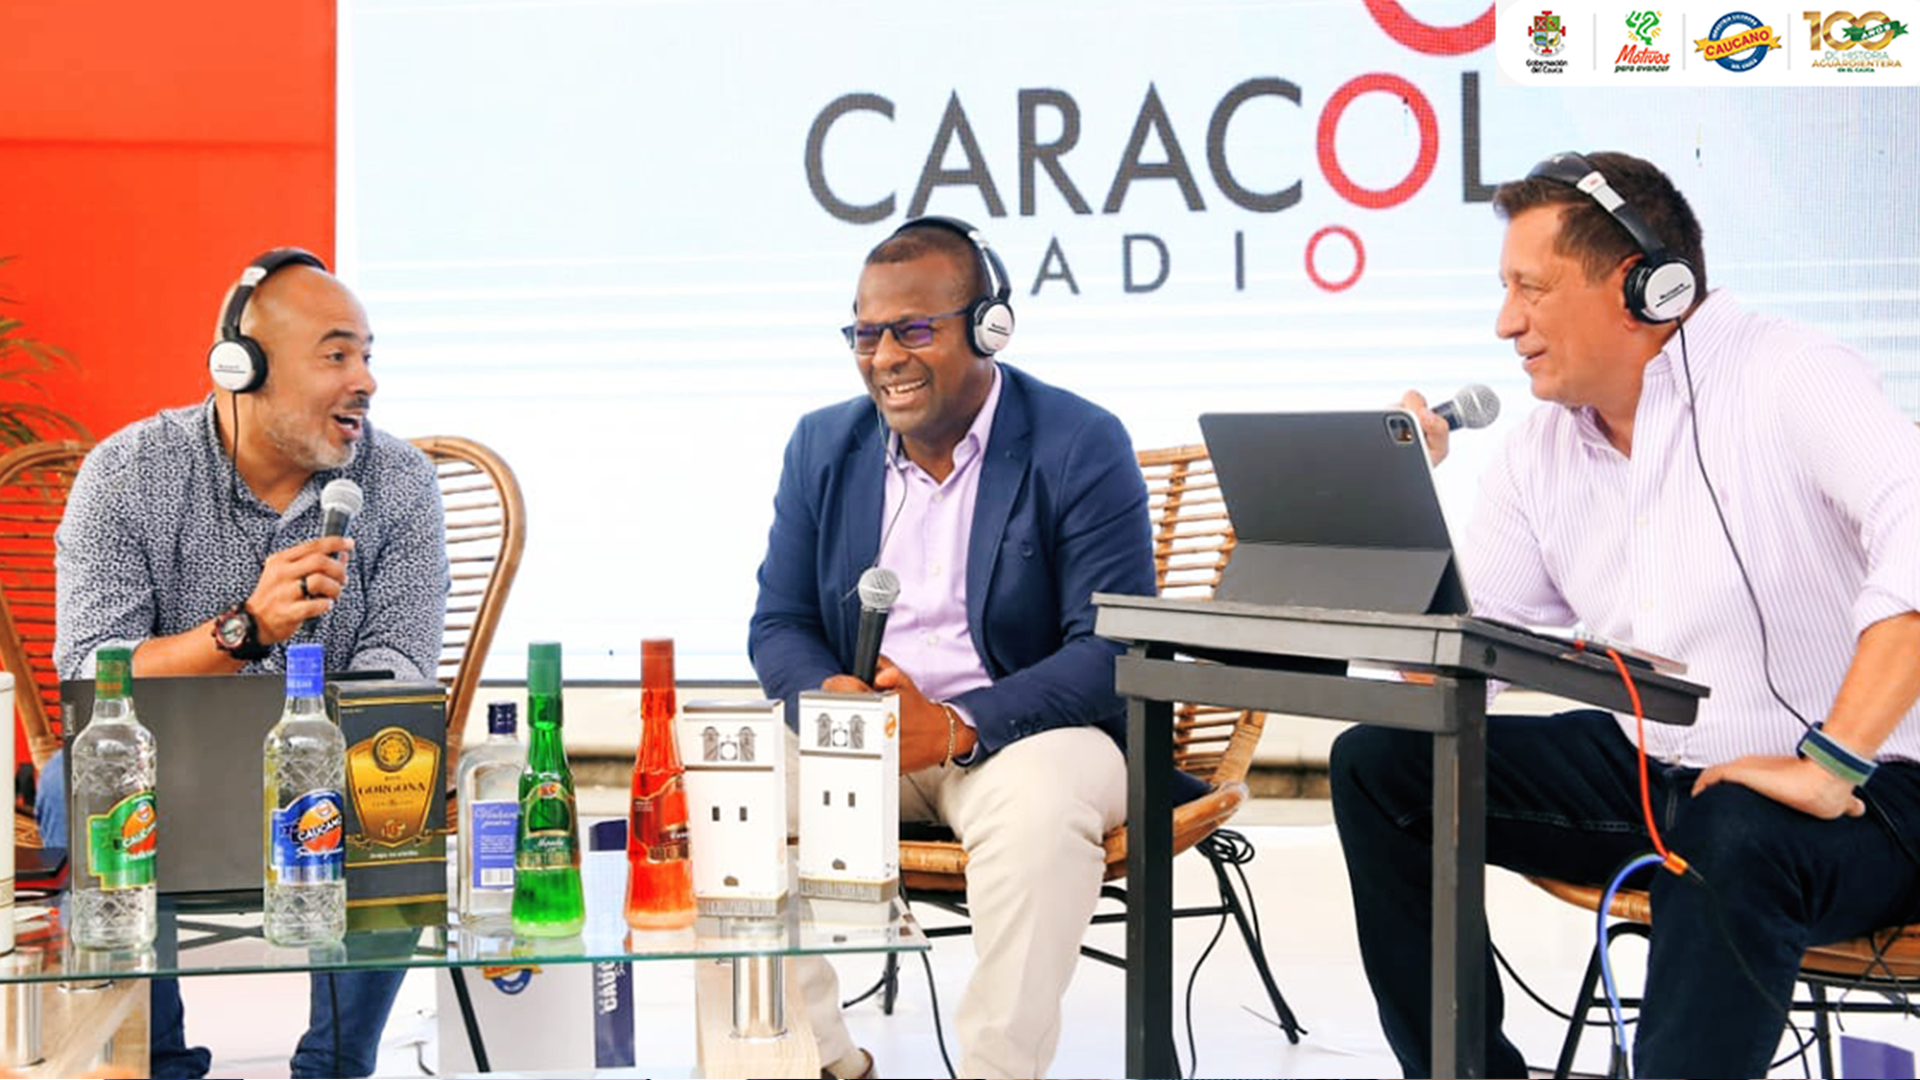                                              Industria Licorera del Cauca hace presencia en la gira de La Luciérnaga de Caracol Radio en sus 30 años.
                                            